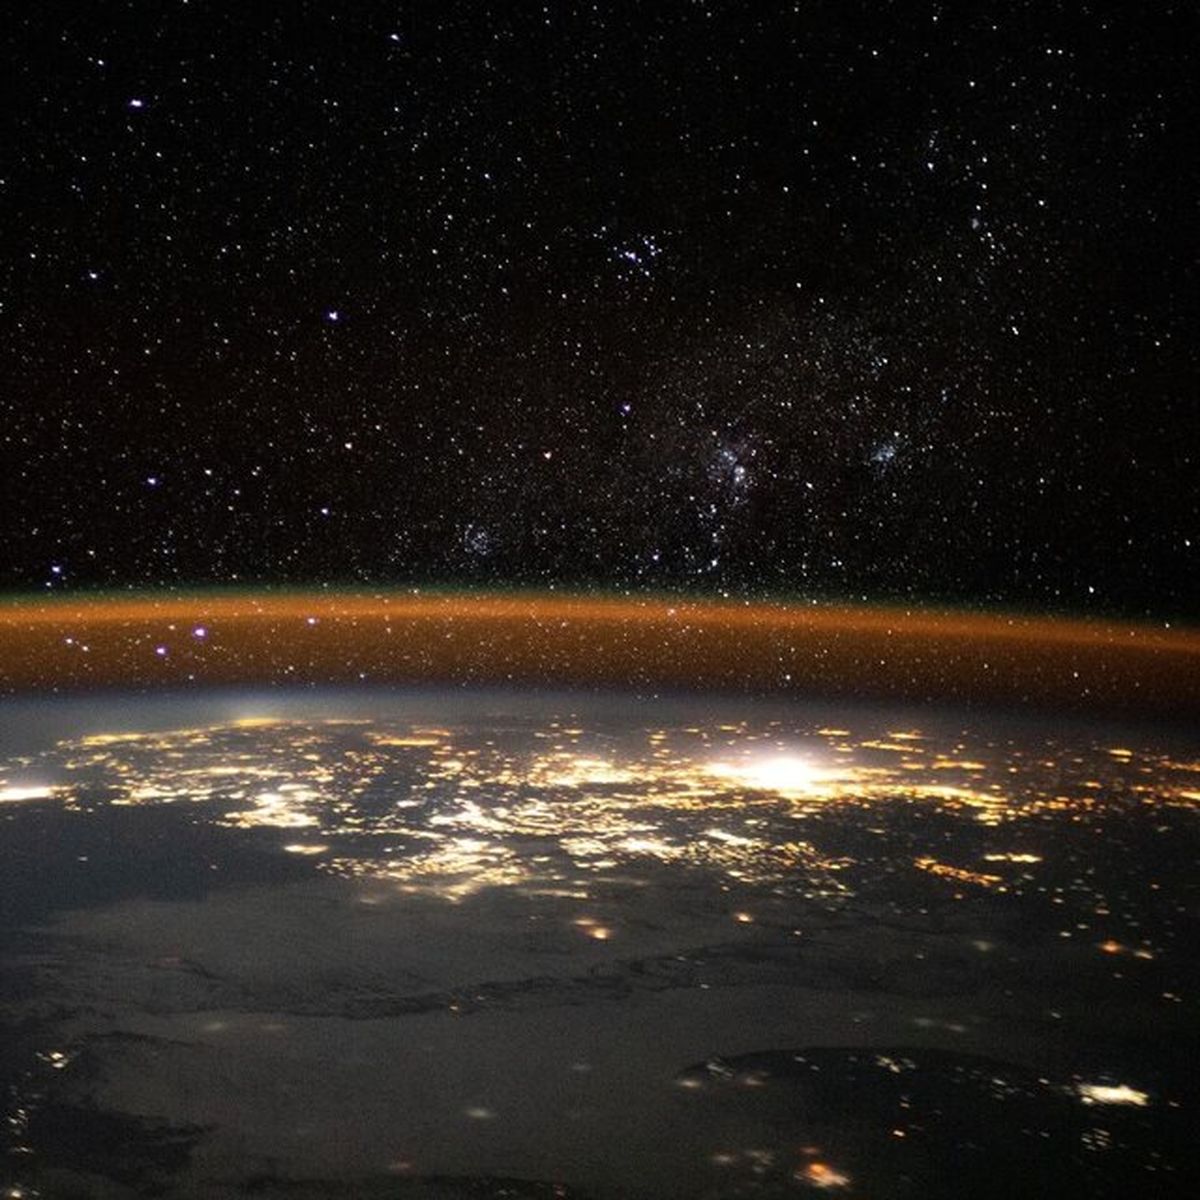 تصویر خیره کننده زمین از منظر ایستگاه فضایی بین المللی